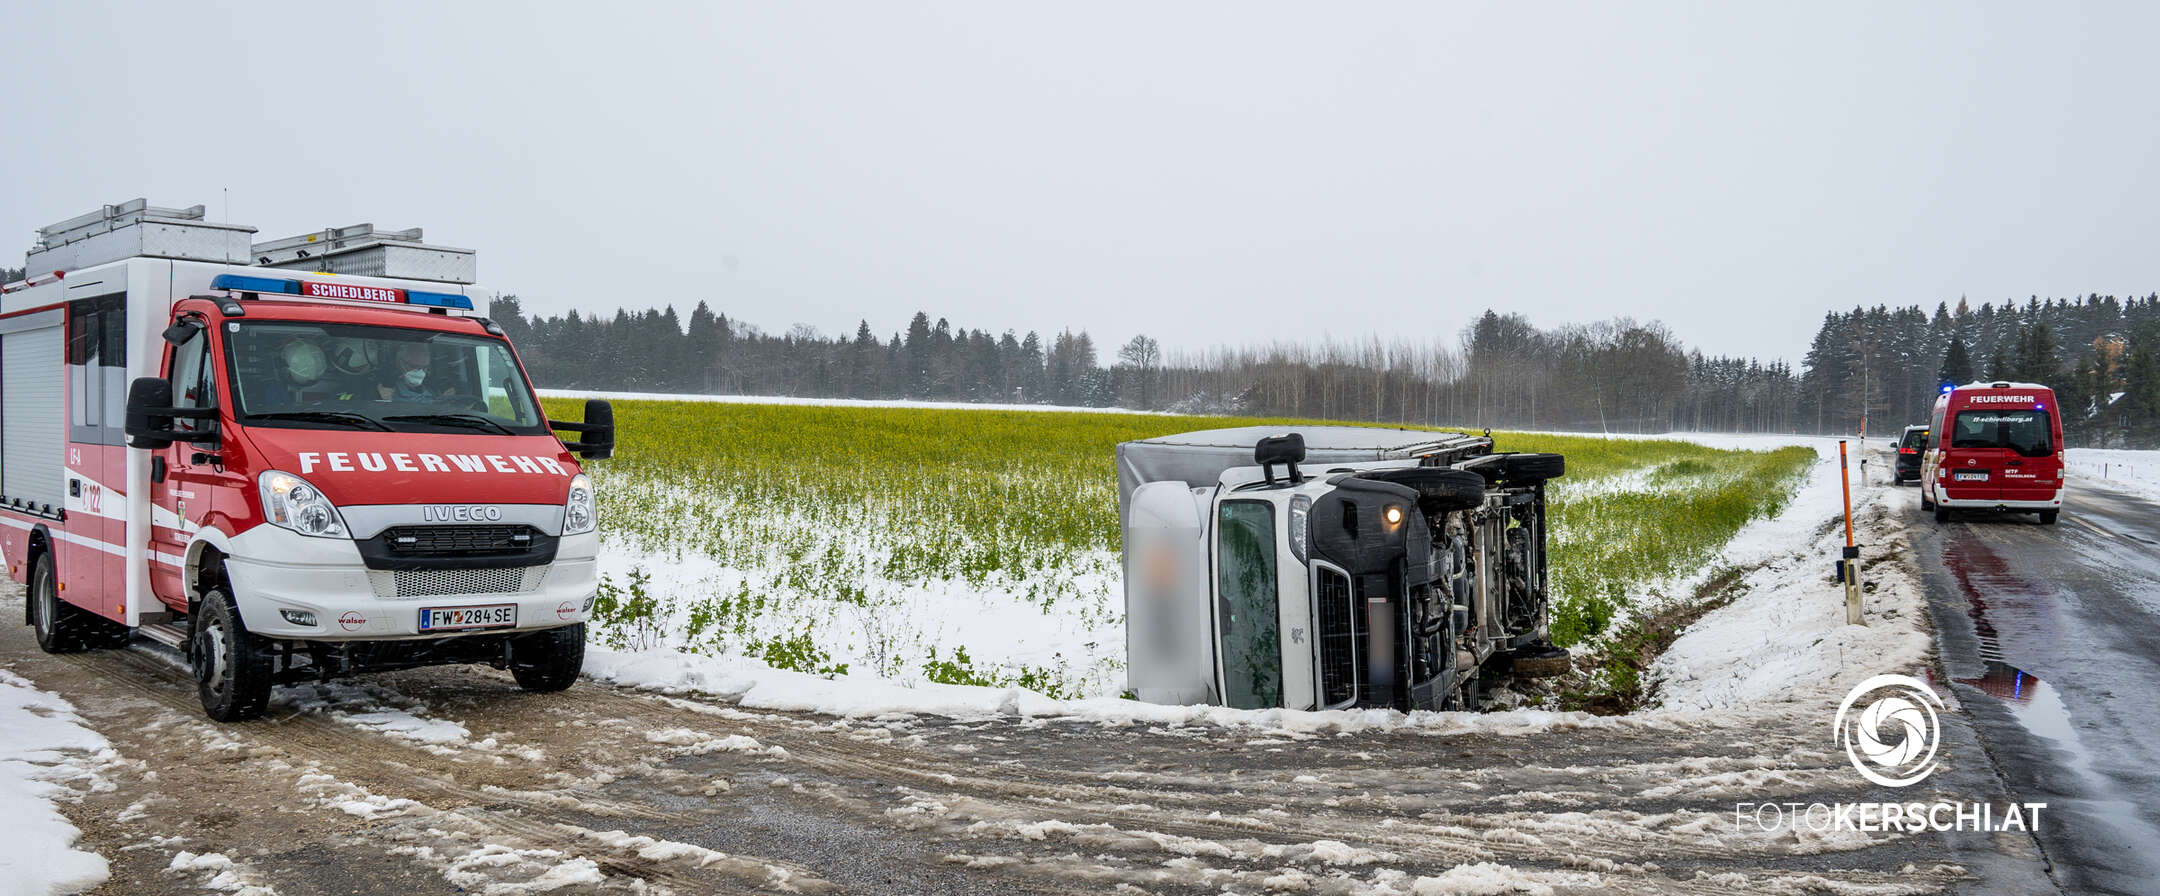 Schneefahrbahn: Transporter mit Sommerreifen stürzte in Straßengraben